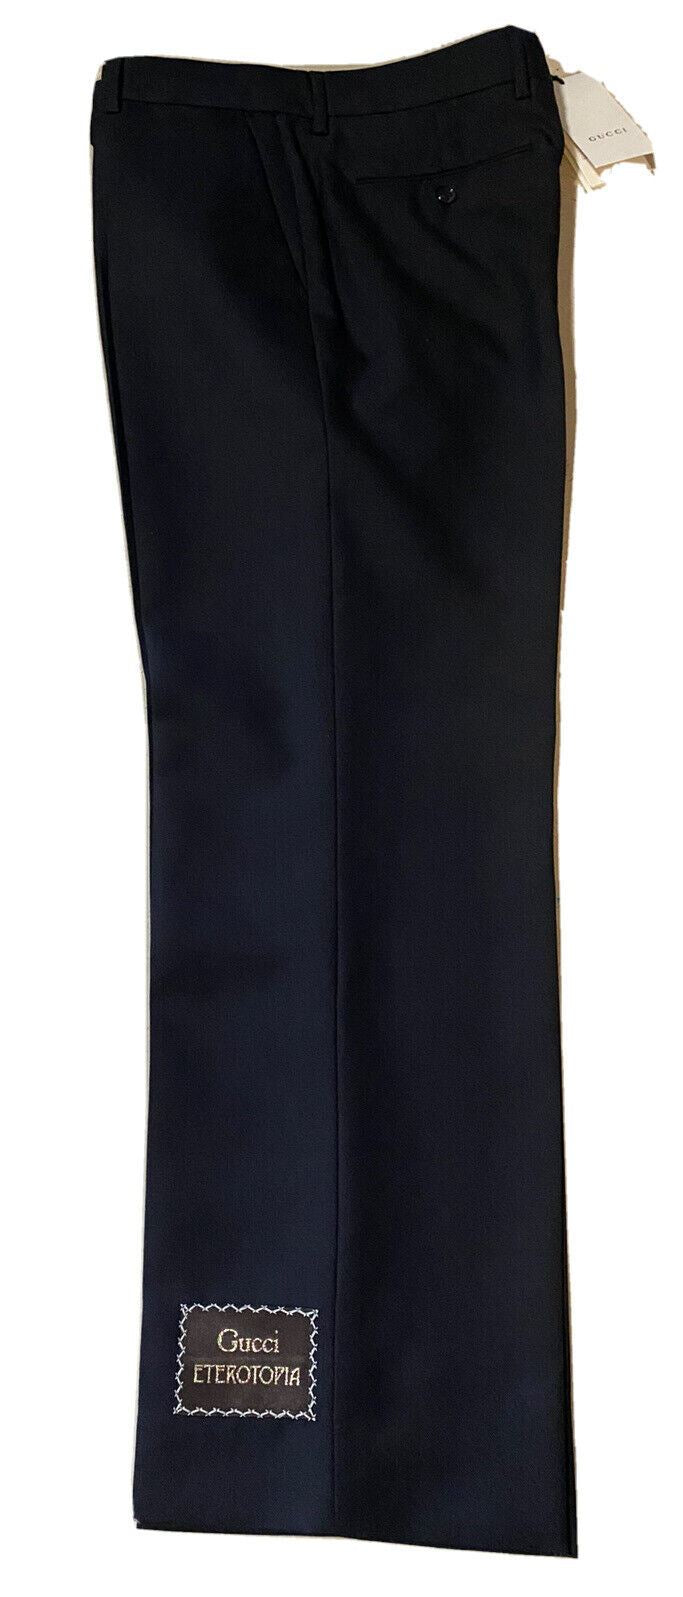 Neu mit Etikett: 1.500 $ Gucci Herren-Anzughose aus Panamawolle/Mohair, Schwarz, 38 US (54 Eu)